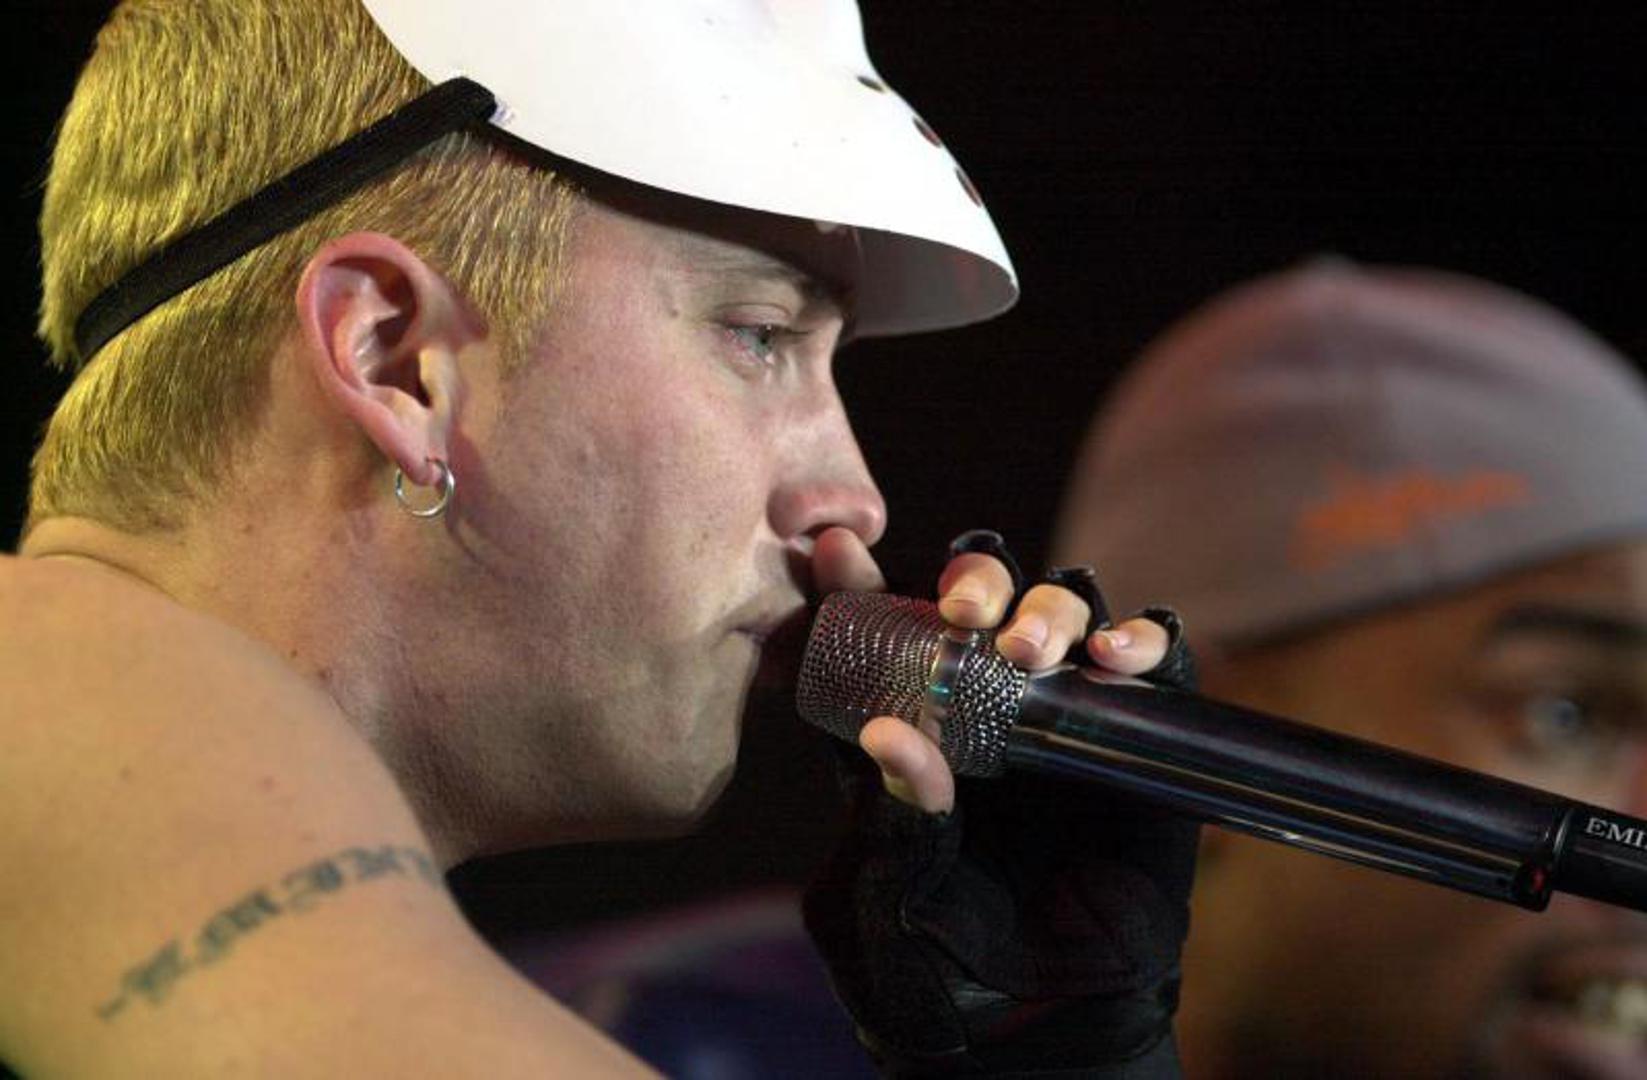 Eminem još od malih nogu voli spavati u potpunom mraku. Kada boravi u hotelu njegova soba mora biti potpuno zamračena jer jedino tako može zaspati.